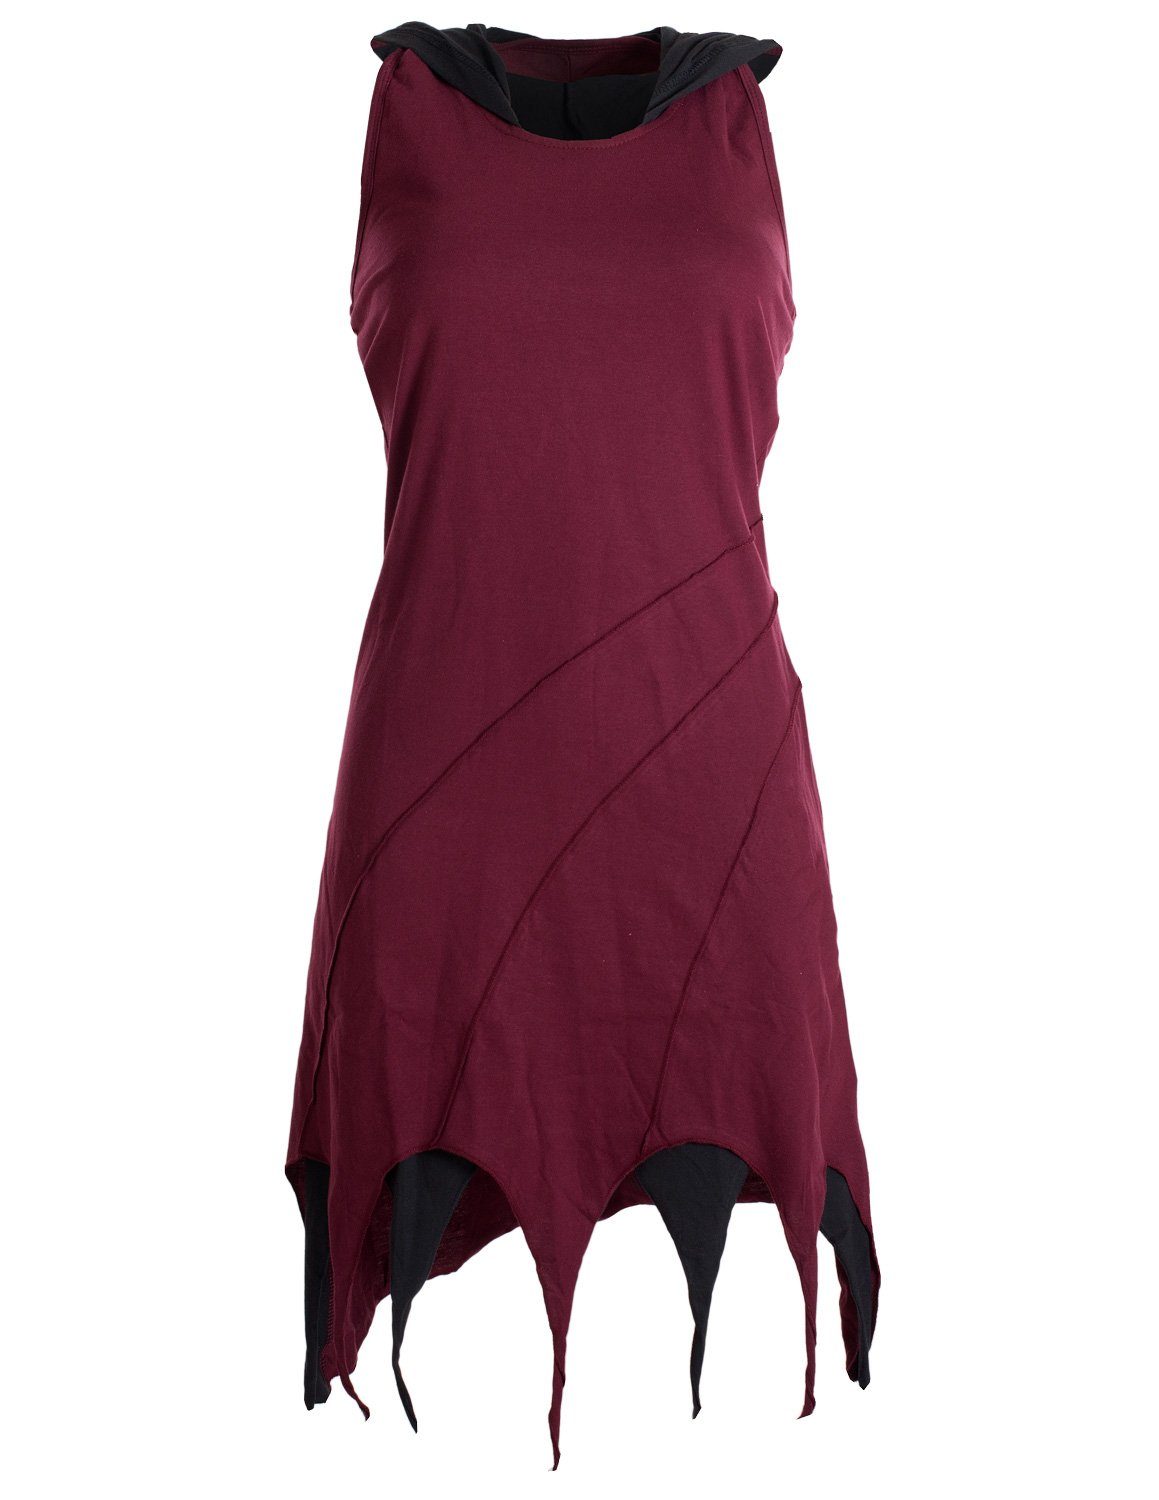 Vishes Neckholderkleid Kapuzen Lagenlook Zipfel-Neckholder aus Baumwolle Hippie, Goa, Elfen Kleid dunkelrot